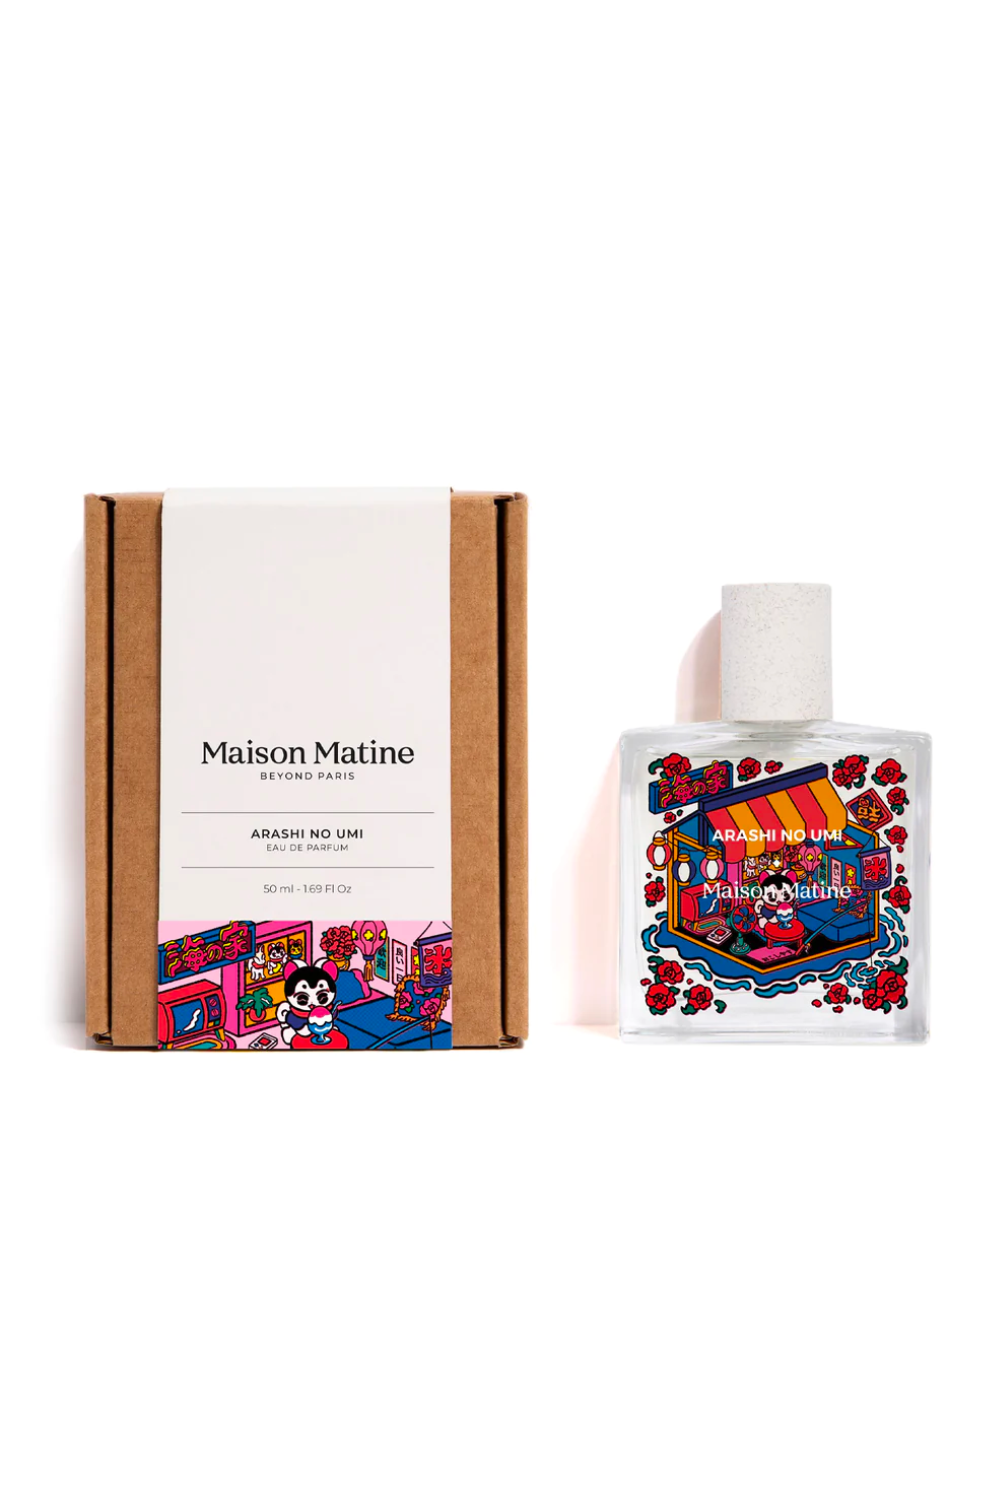 Maison Matine Arashi No Umi Eau de Parfum - 50ml